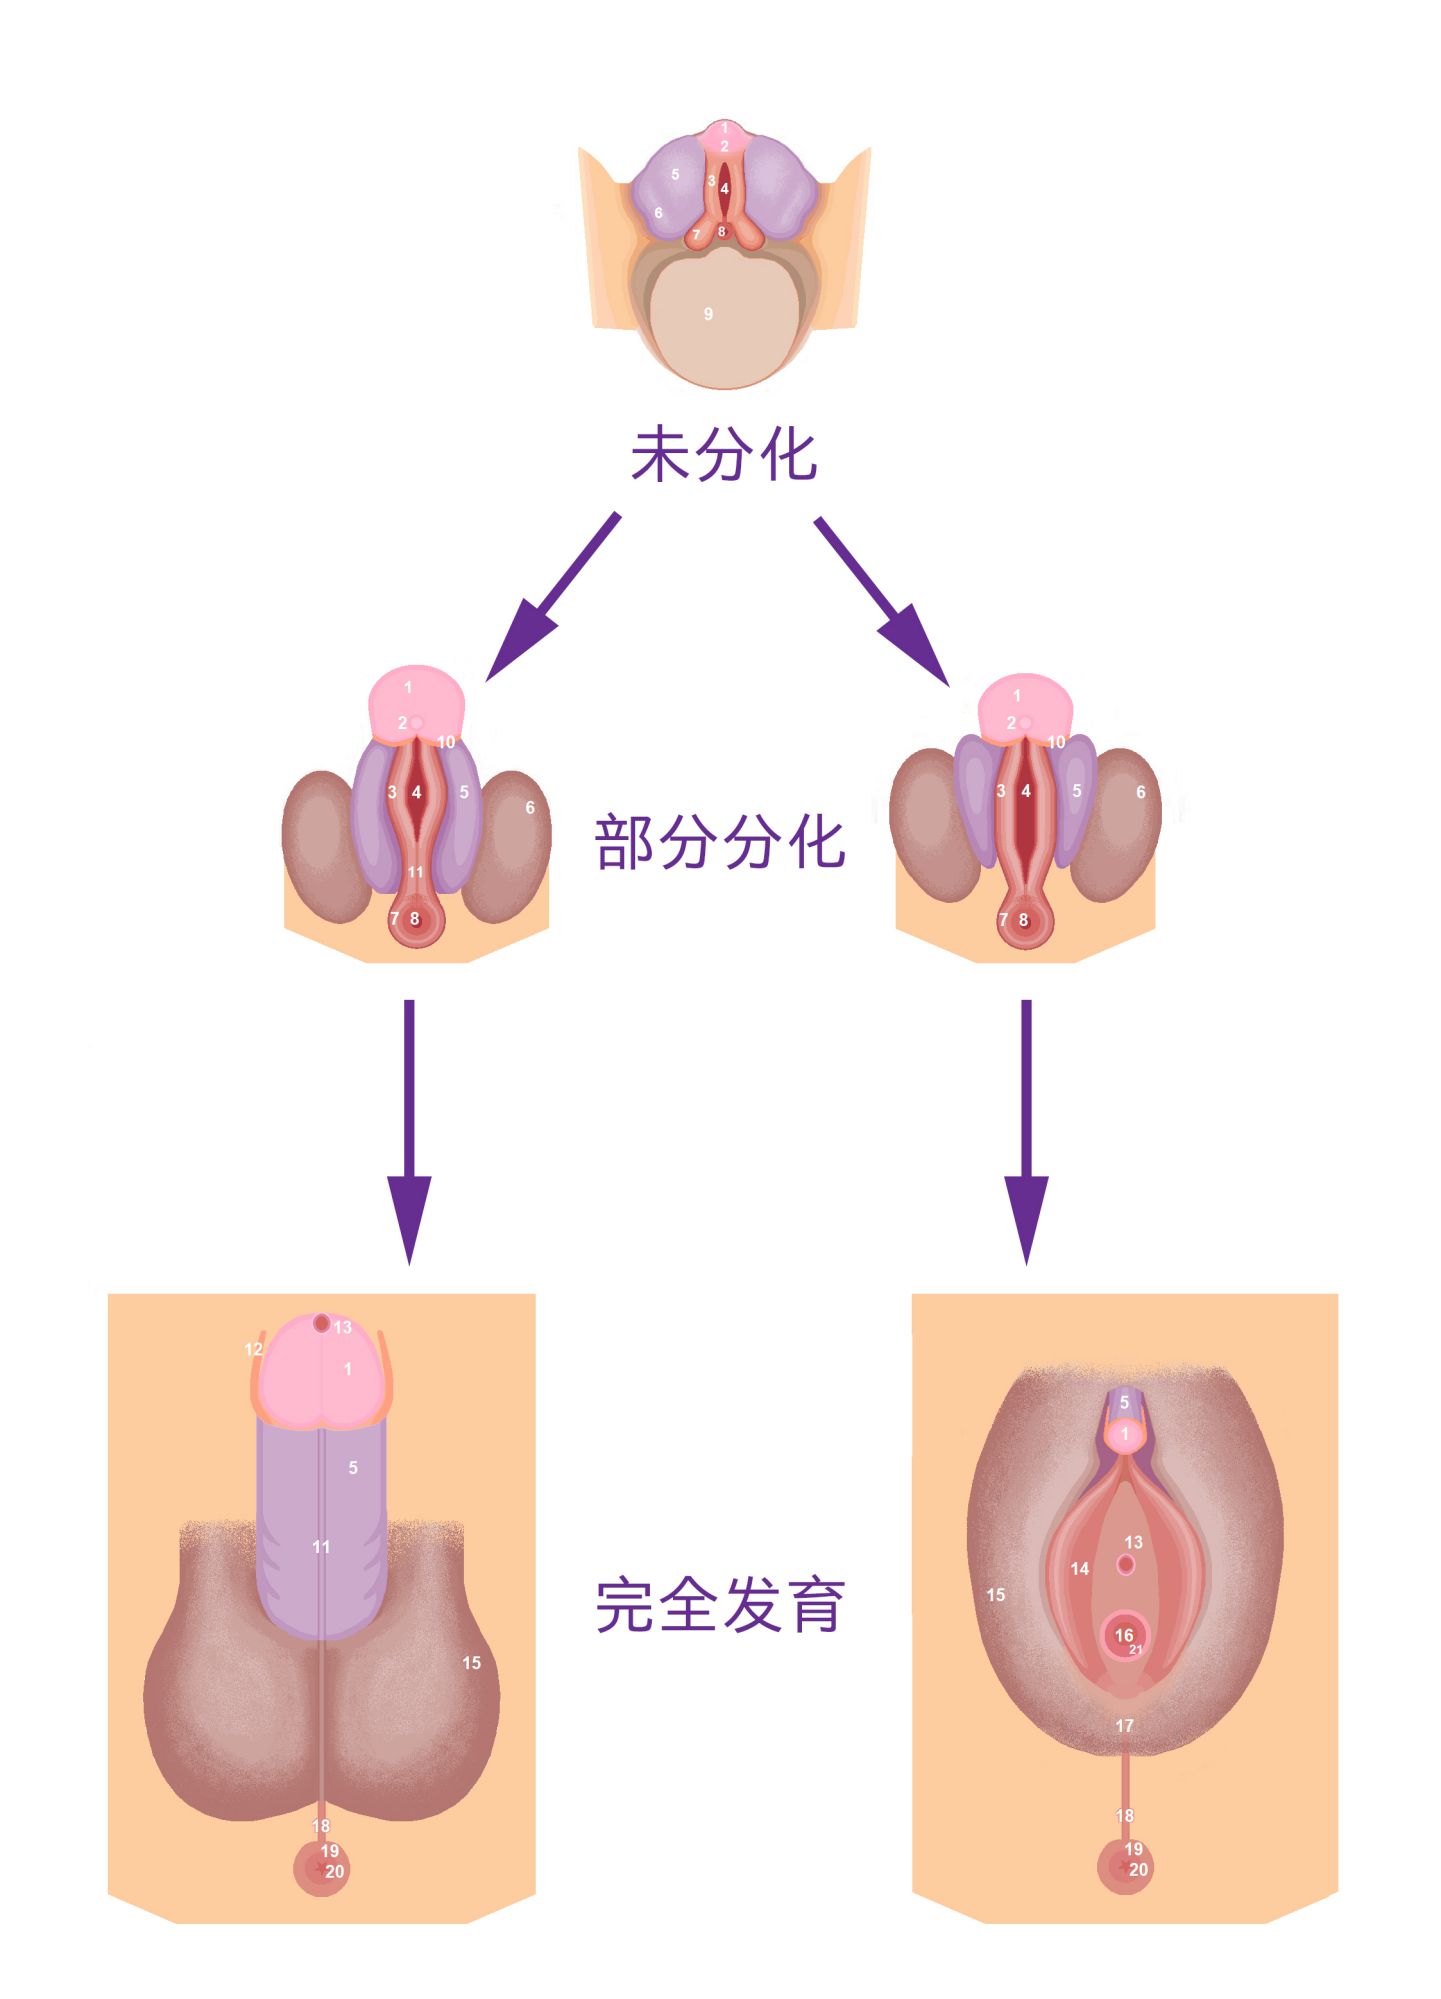 图 15， 人类的外生殖器在胚胎时期，一开始看起来没有区别。经过分化后才可以区分。